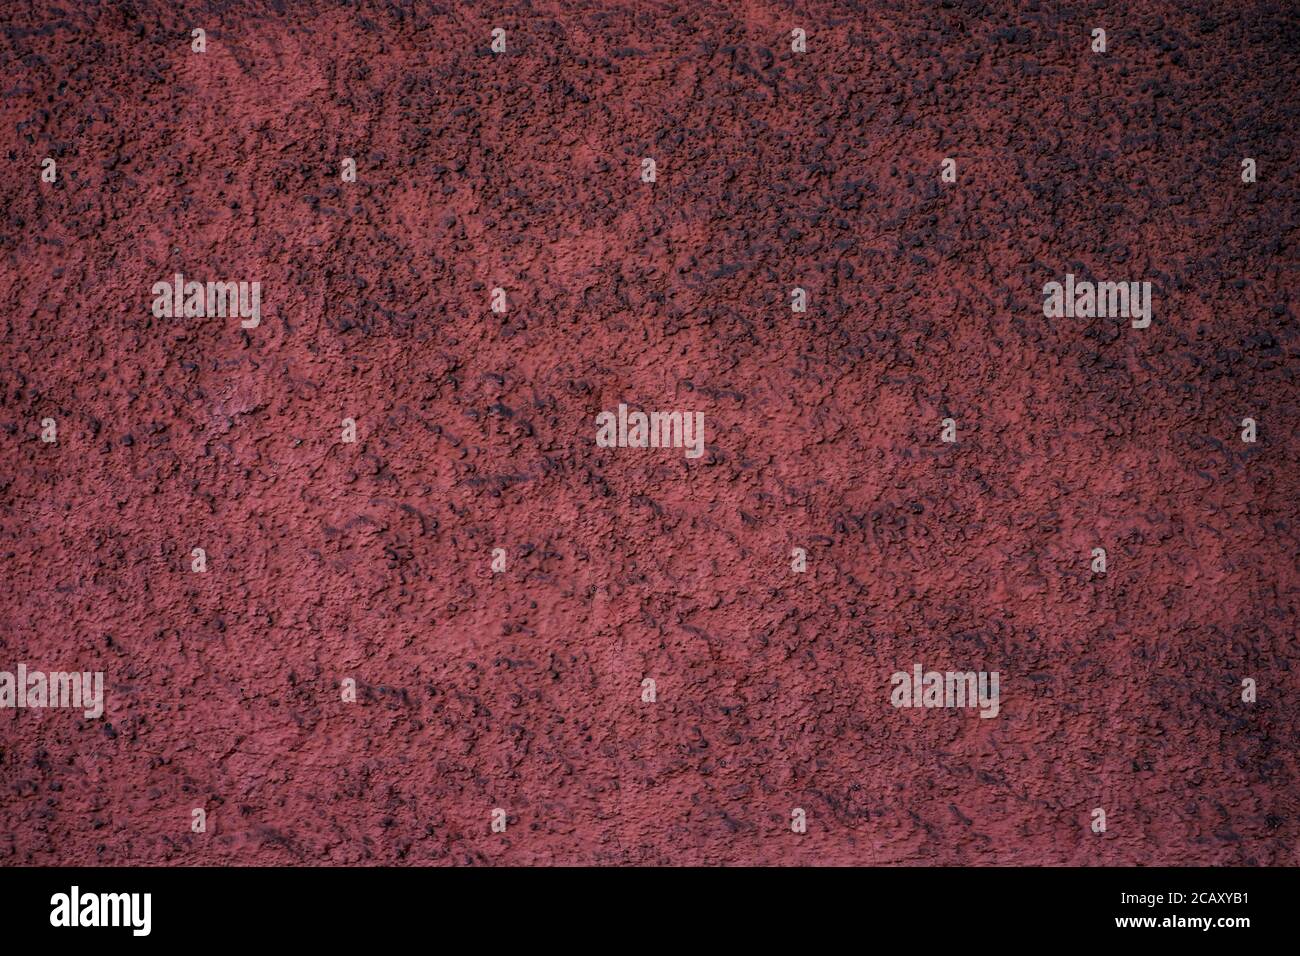 Vider la surface texturée poussiéreuse rouge bordeaux. Banque D'Images